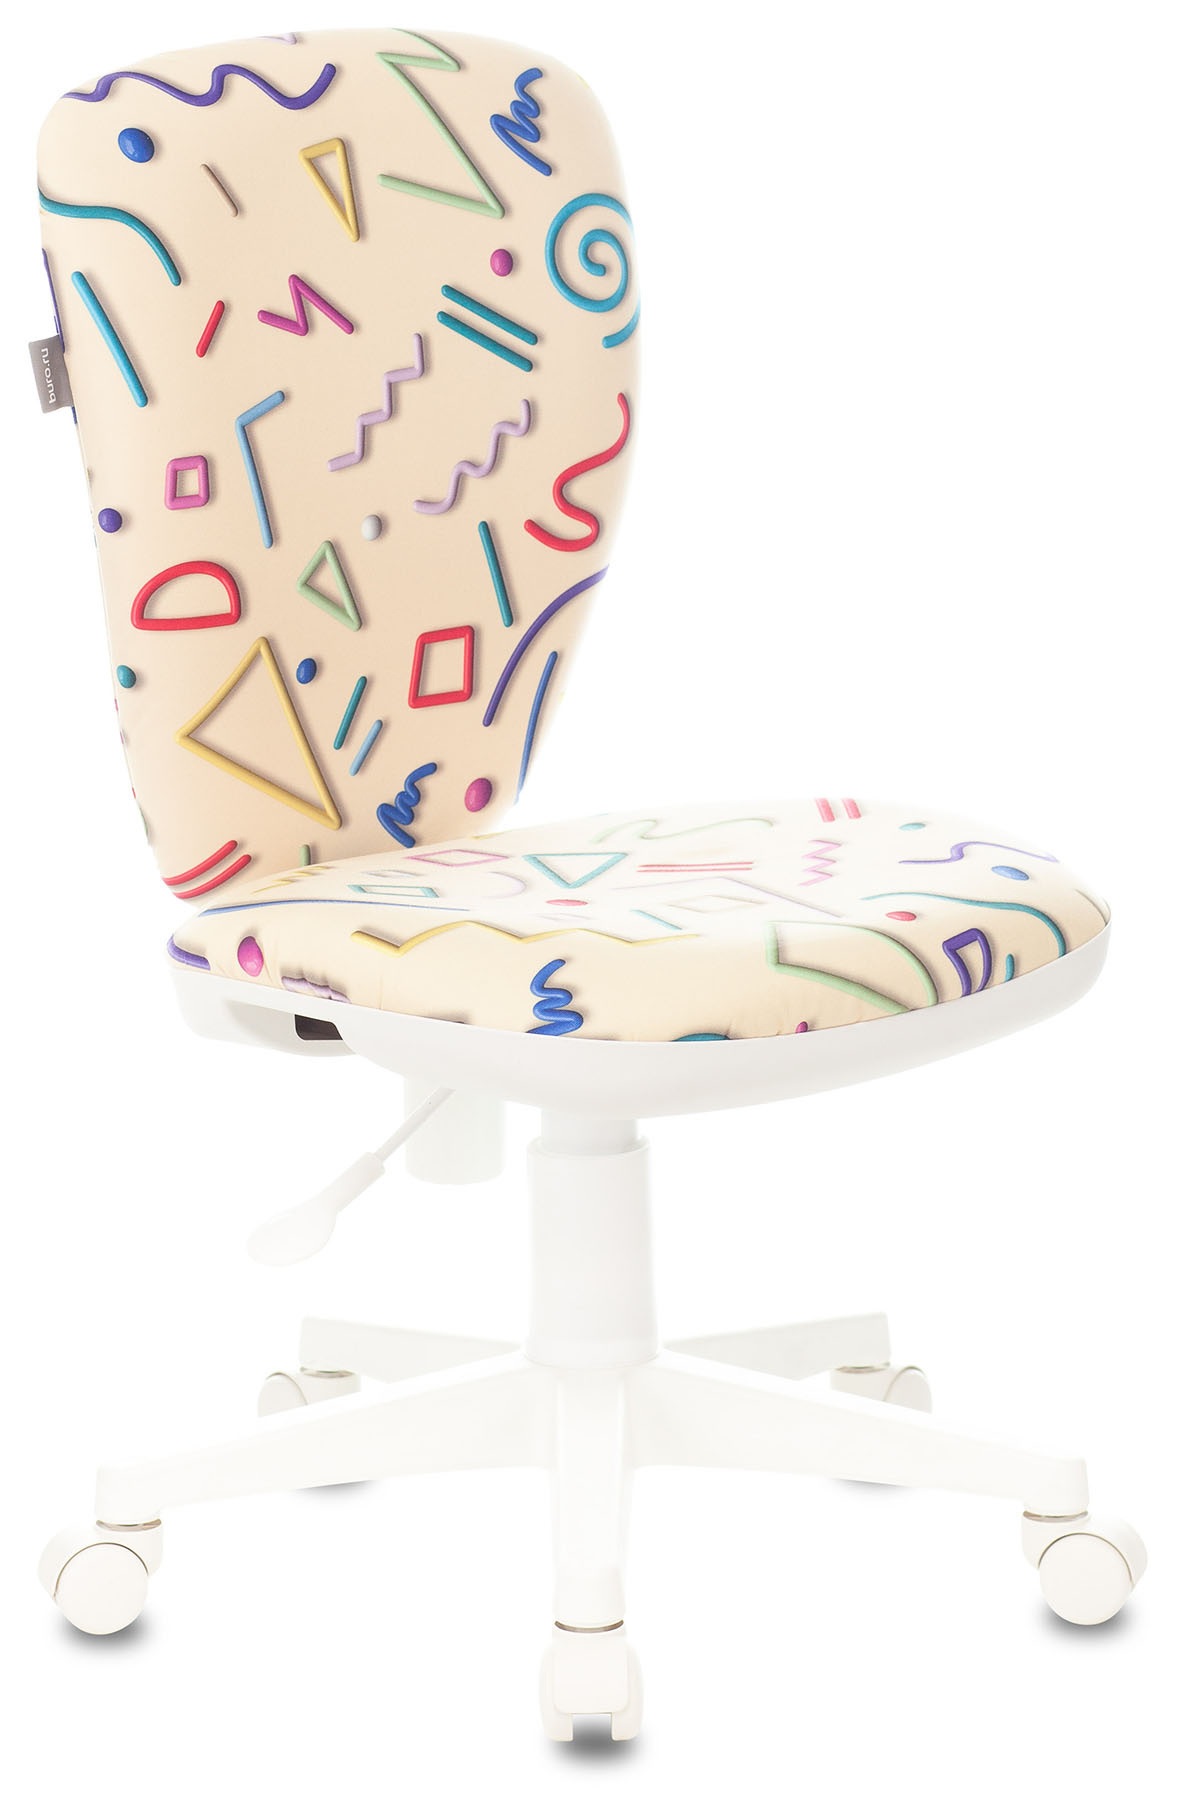 Кресло детское Бюрократ KD-W10, обивка: ткань, цвет: песочный